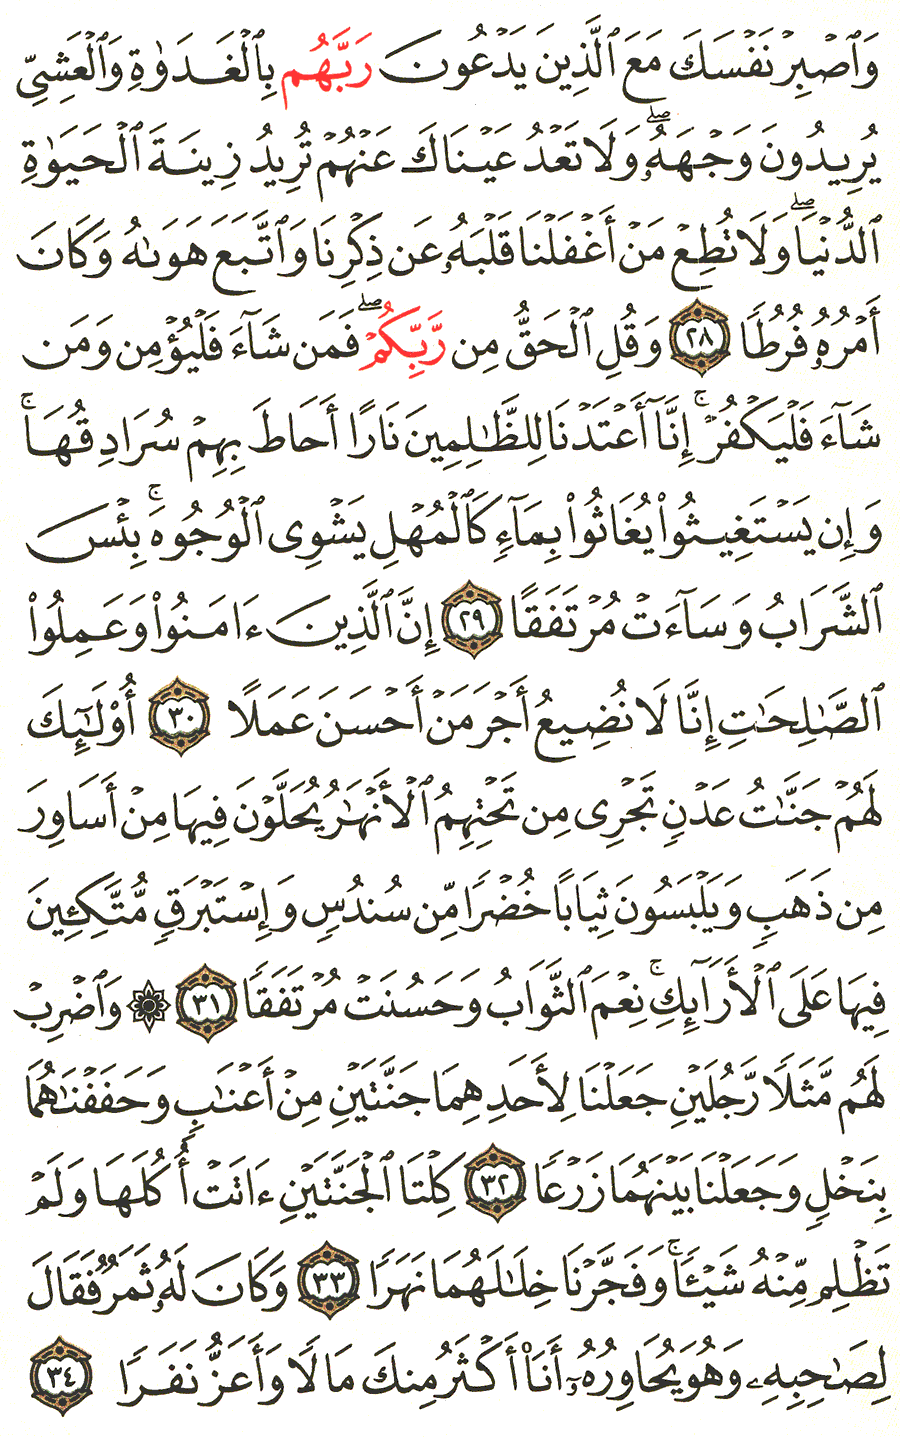 الصفحة 297 من القرآن الكريم